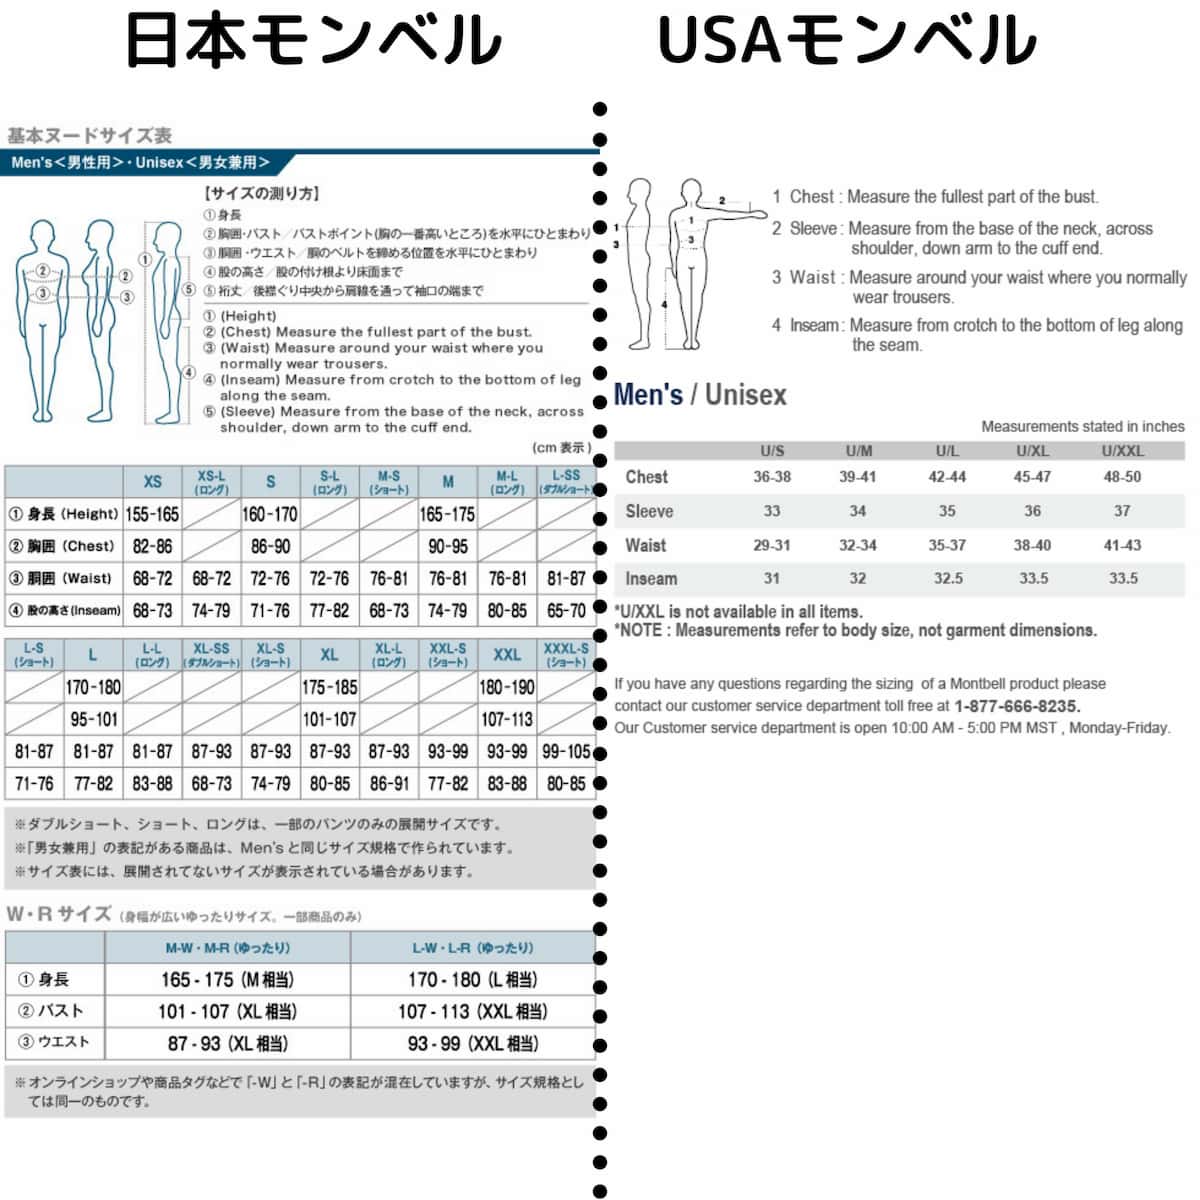 日本とUSAモンベルのサイズ表